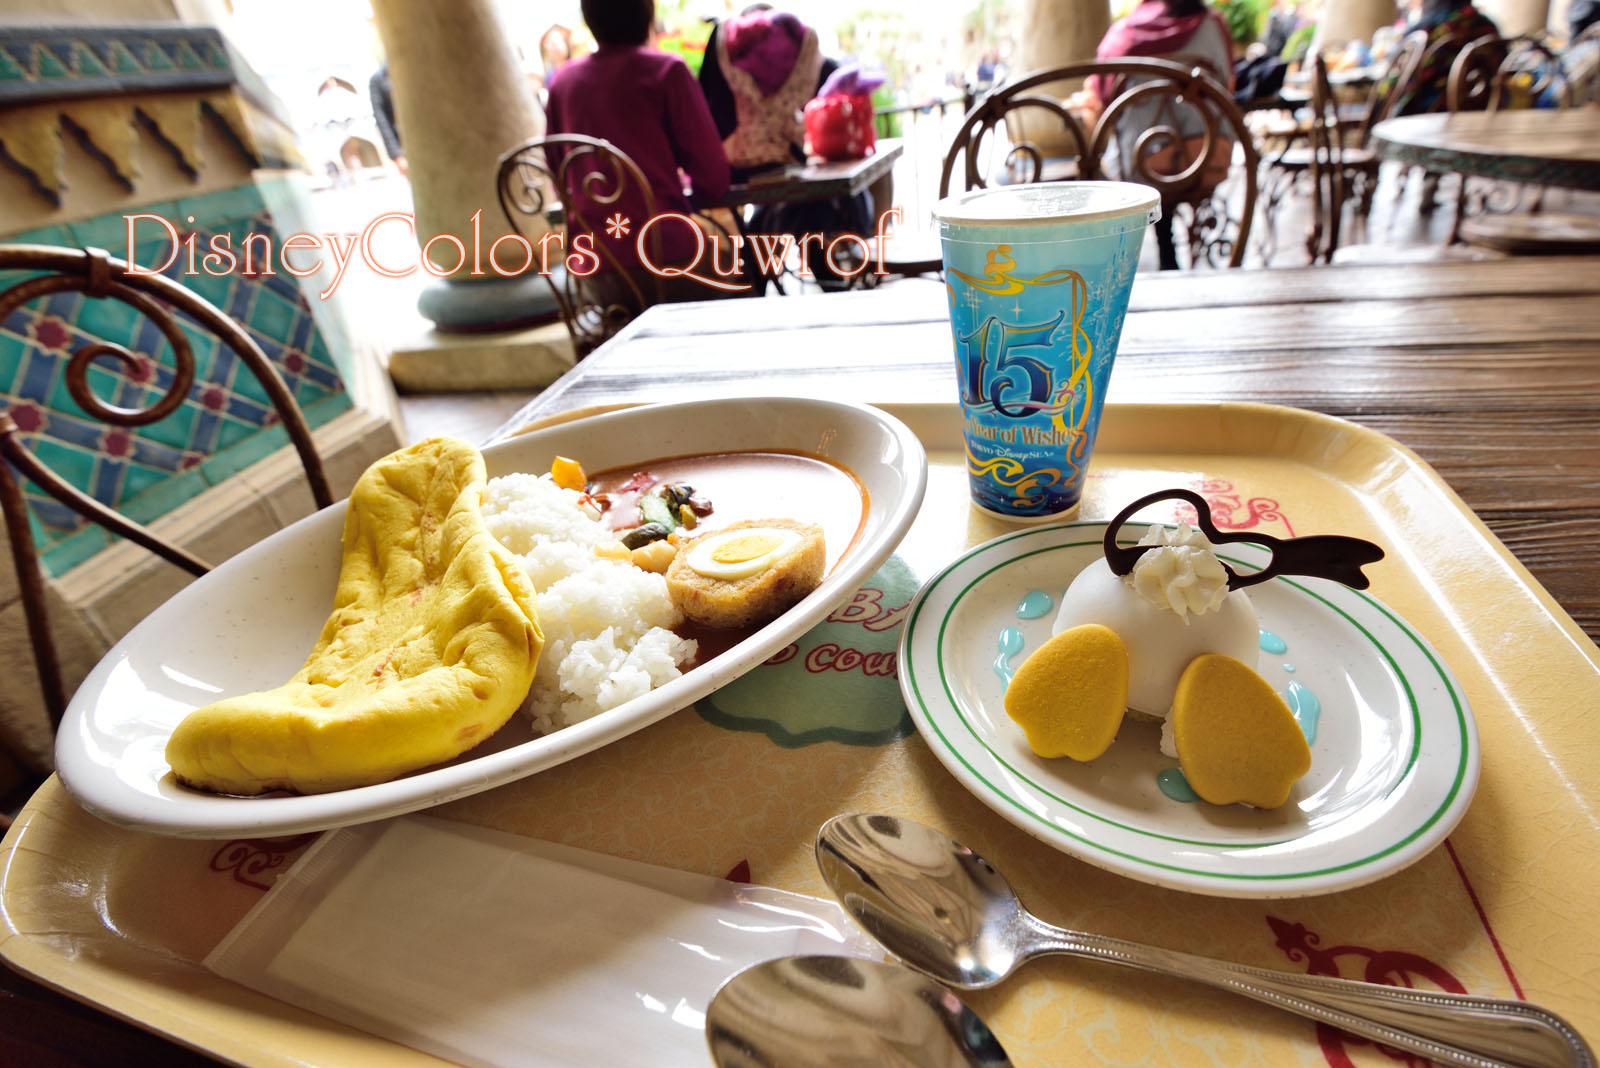 ドナルドのもふ尻デザートが絶品の15周年カレー カスバ フードコート 02 Disney Colors Blog